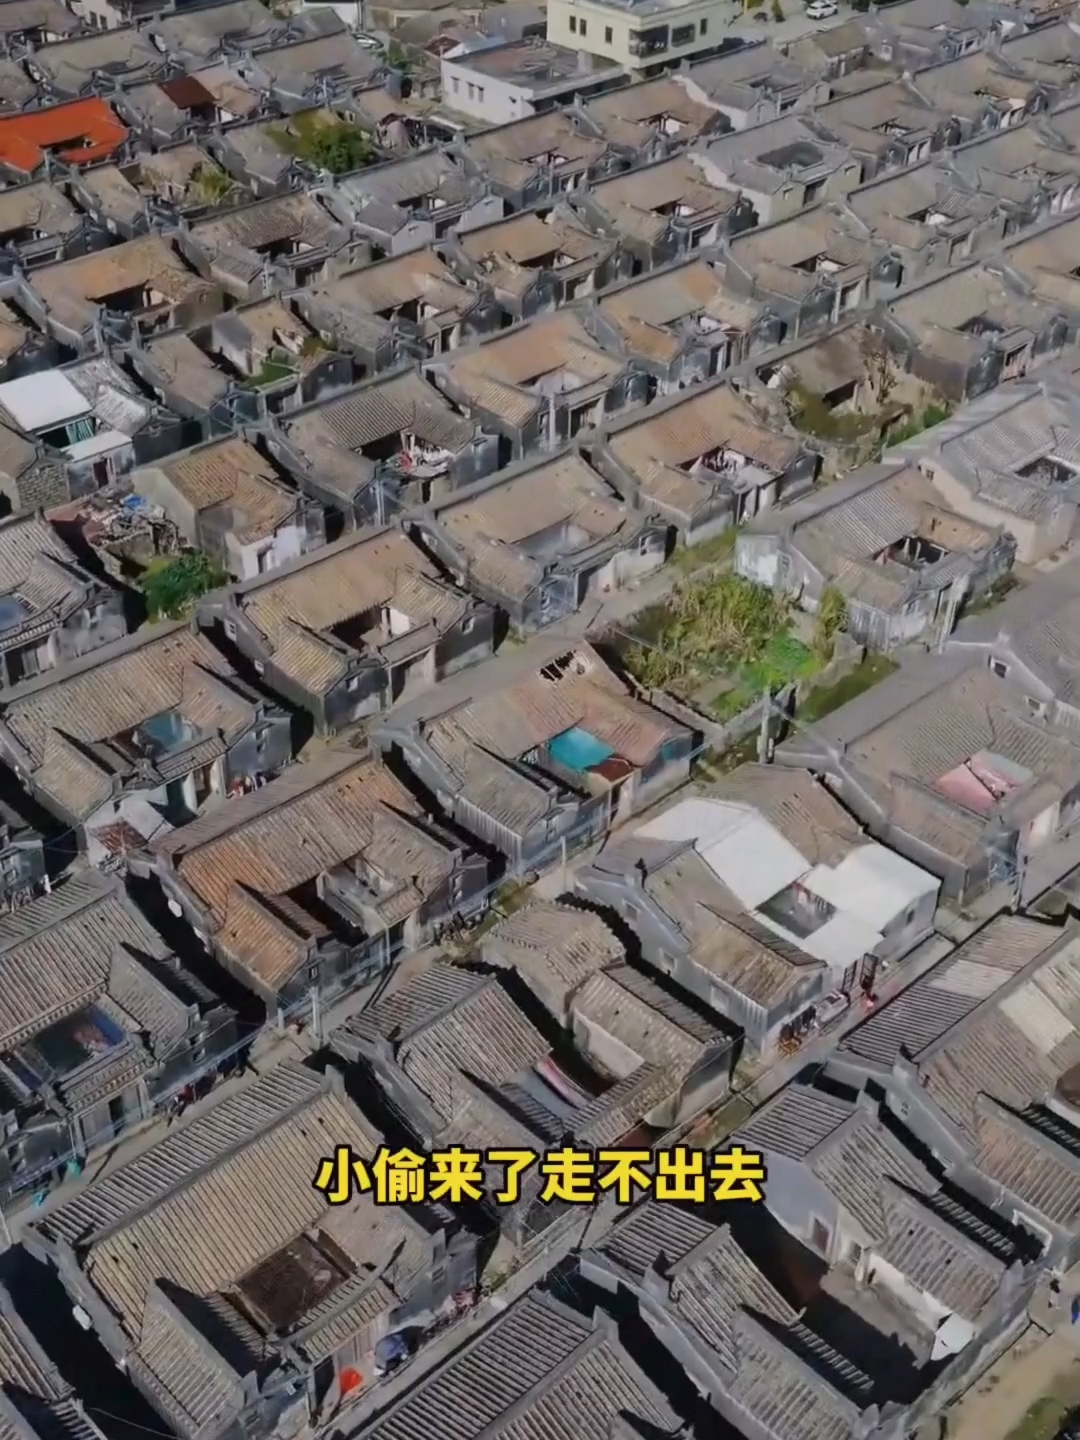 中国最整齐的村庄 ，网友戏称为迷宫村，广东华溪村#广东旅行 #玩转户外